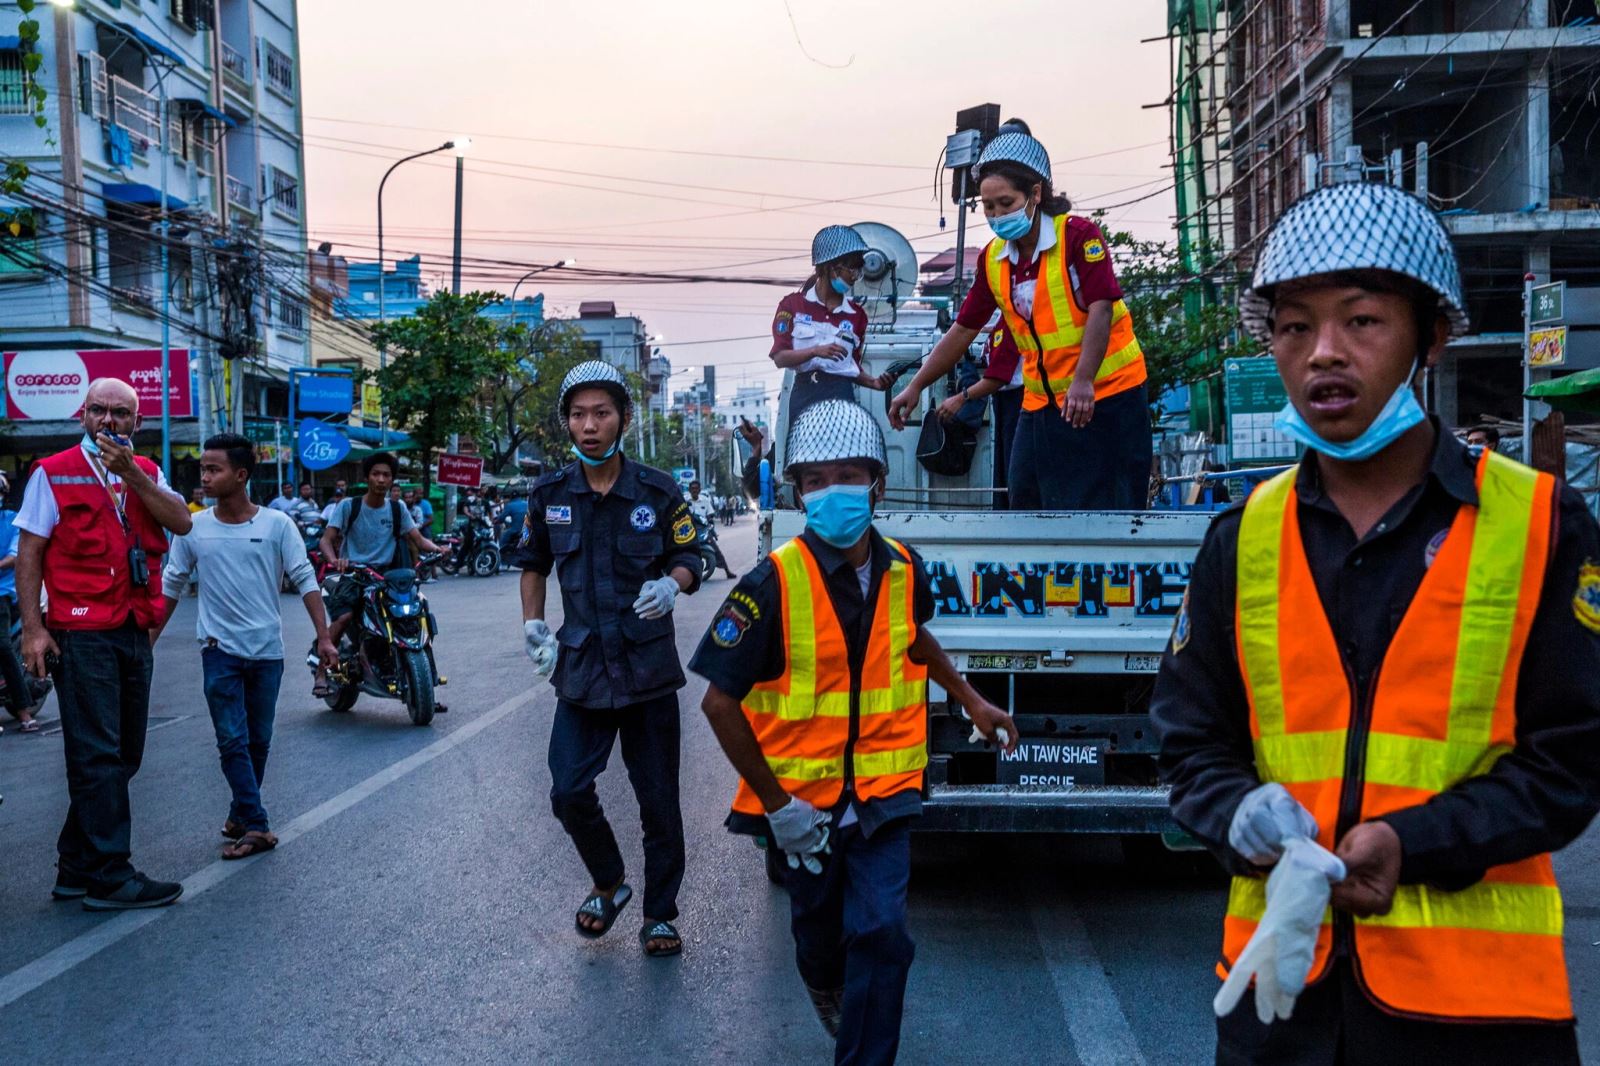  Lực lượng an ninh nỗ lực vãn hồi trật tự trong cuộc biểu tình ở Myanmar. Ảnh: New York Times